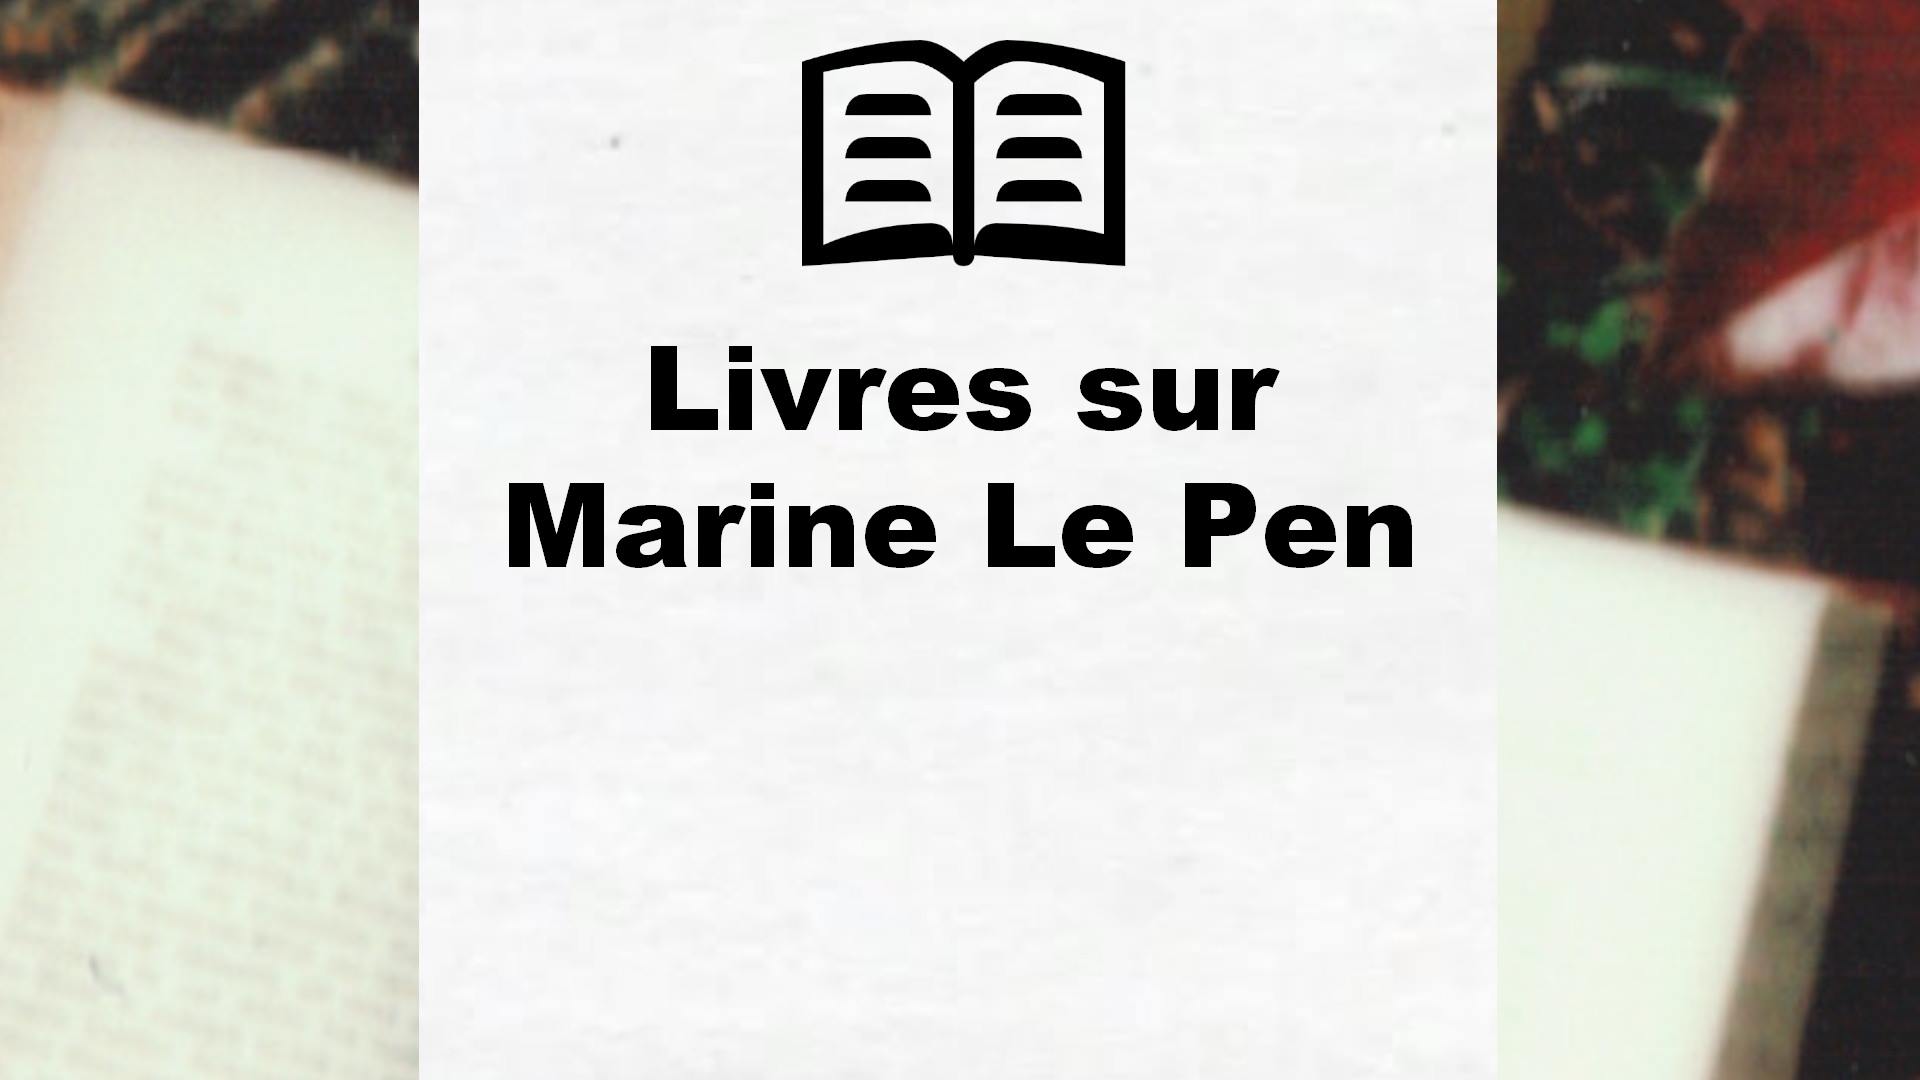 Livres sur Marine Le Pen